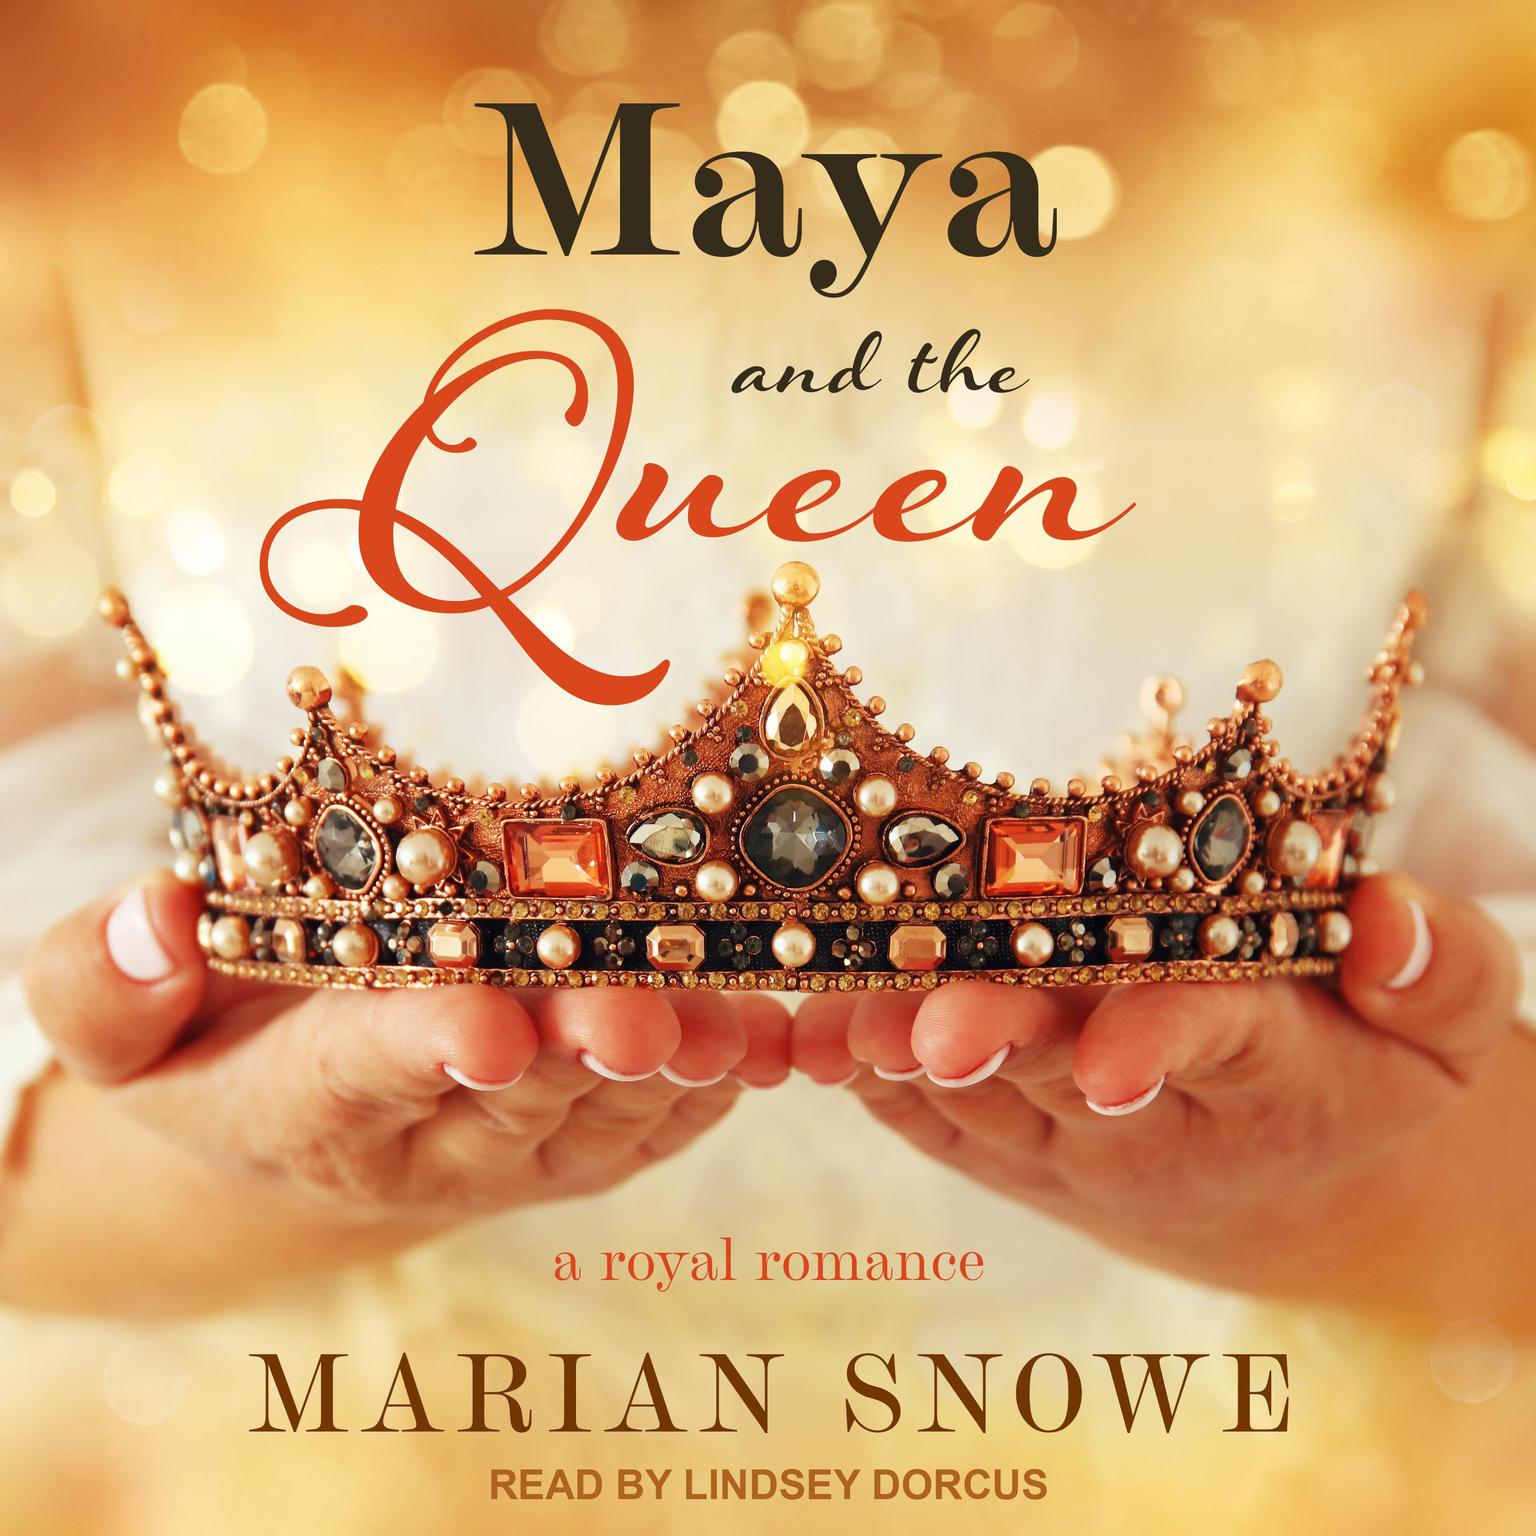 Marian Snowe, Lindsey Dorcus: Maya and the Queen (AudiobookFormat, 2021, Tantor Audio)